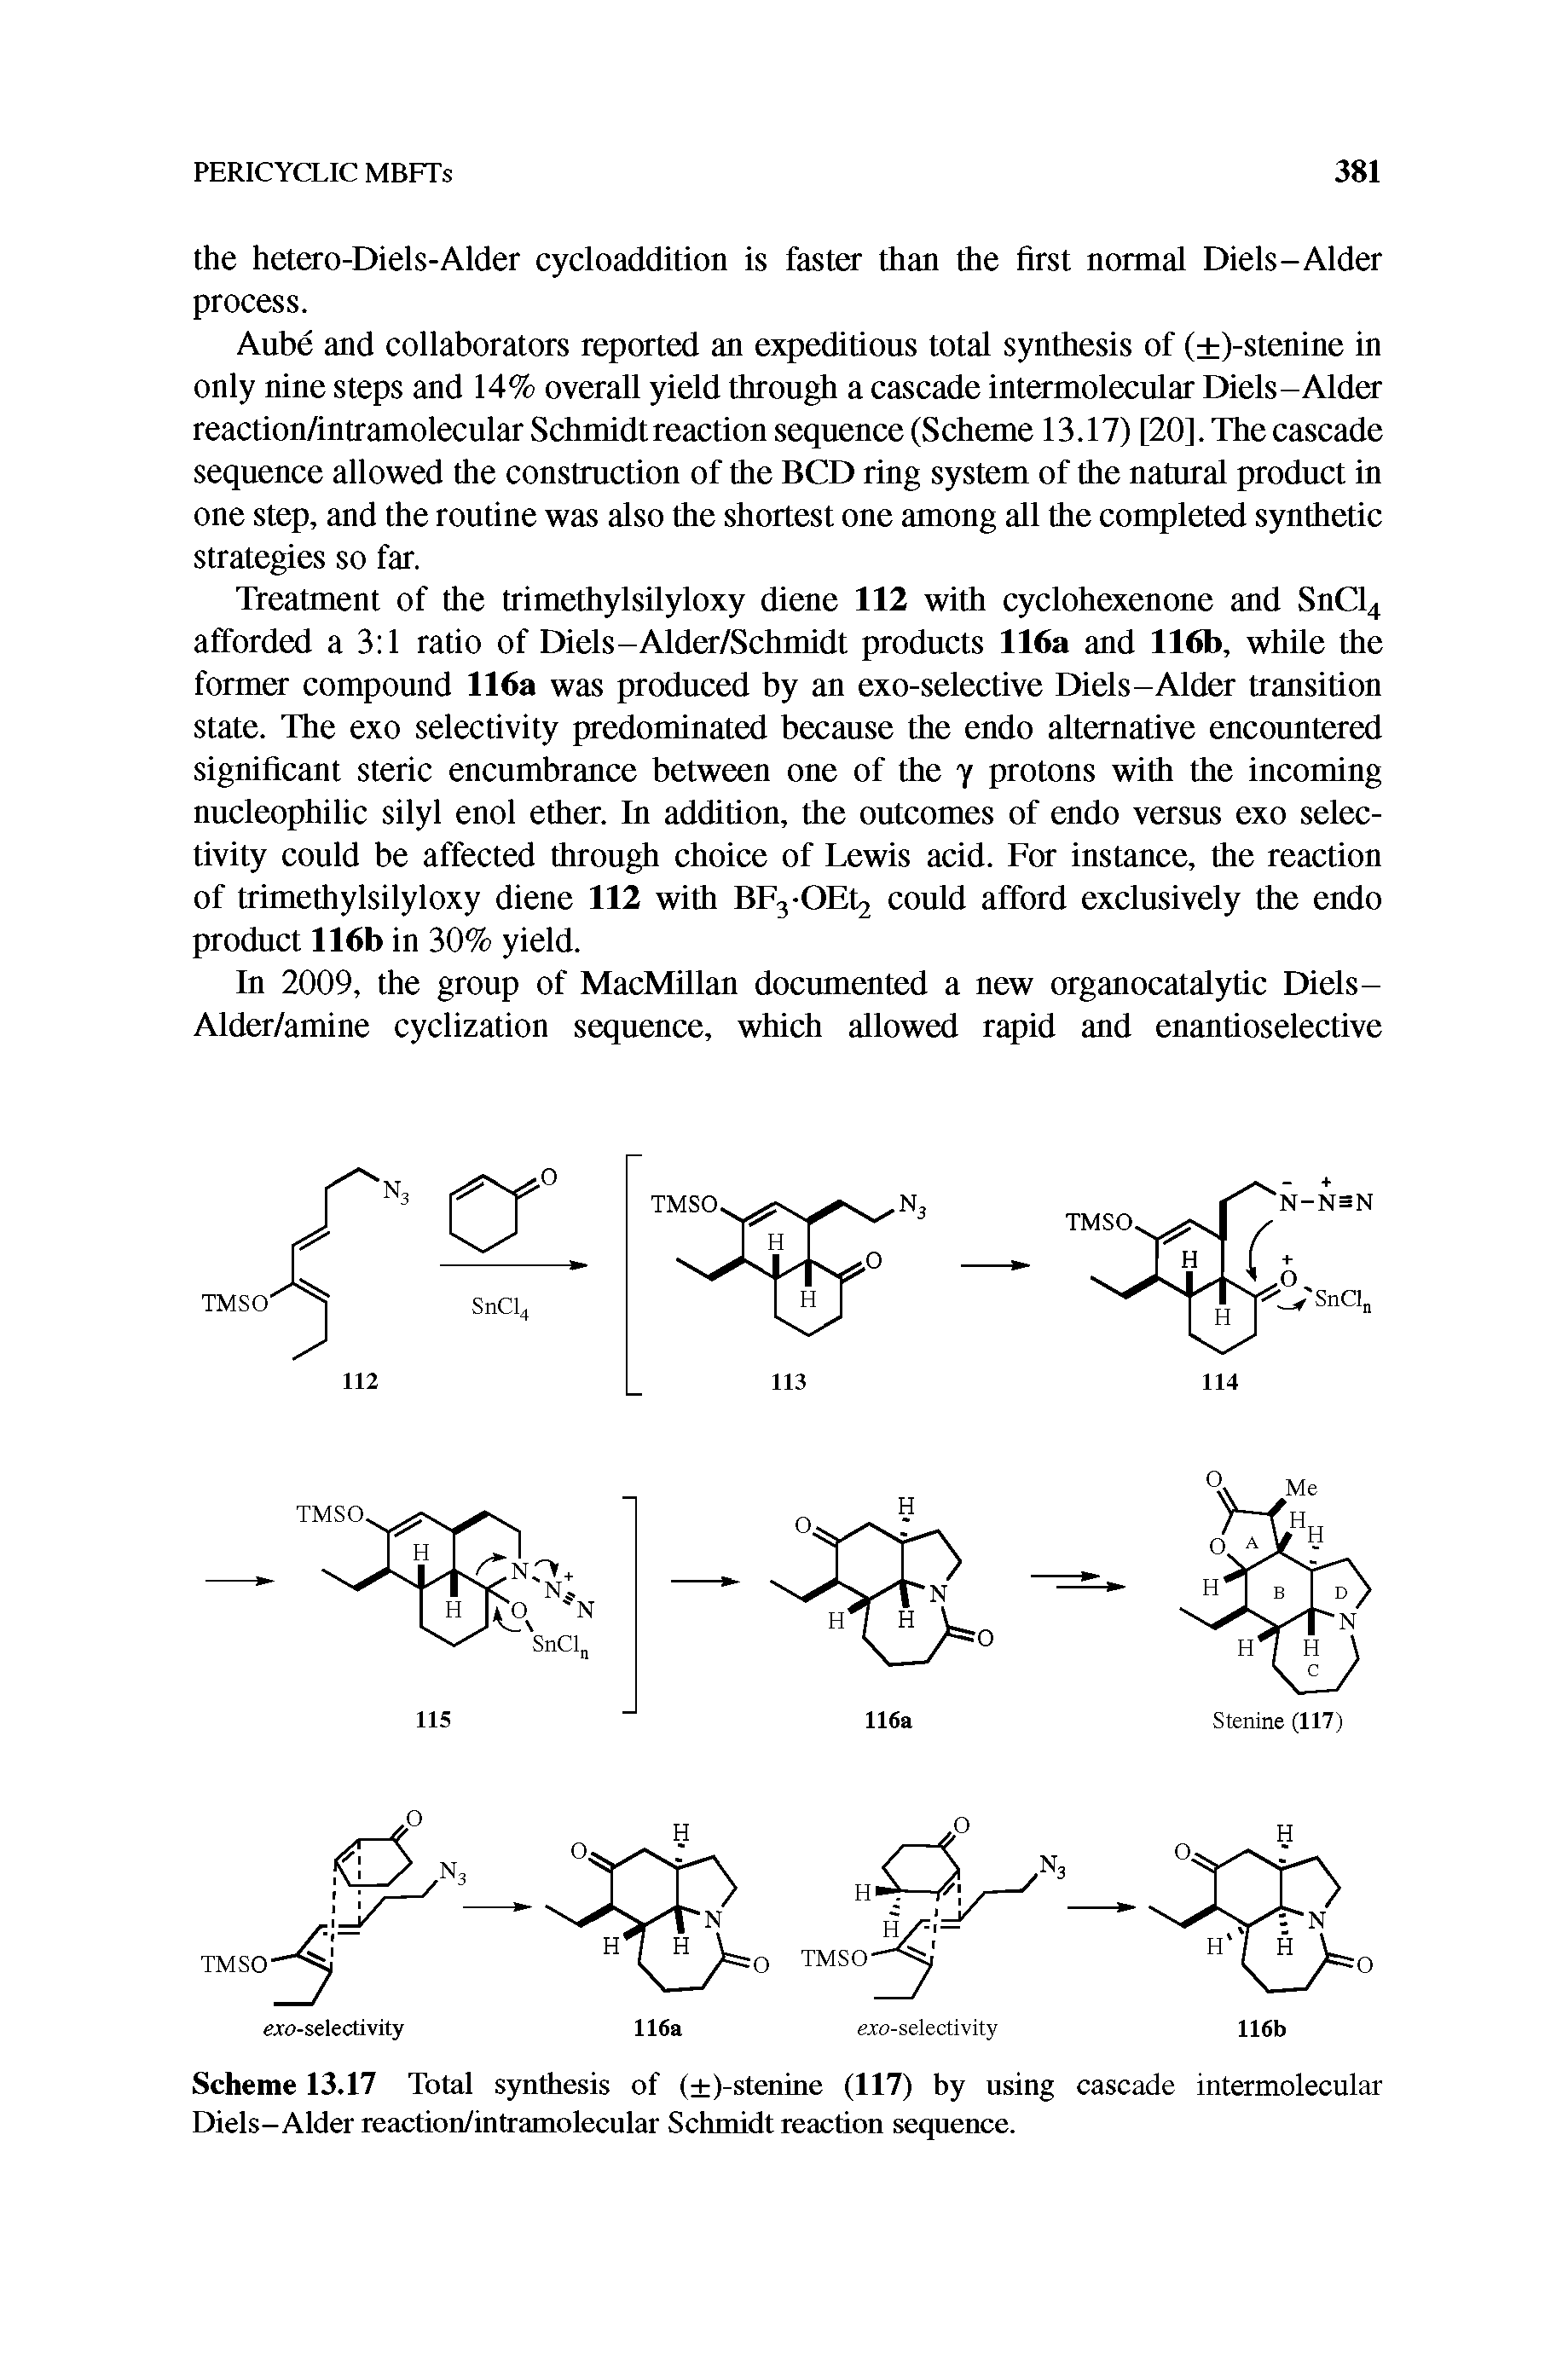 Scheme 13.17 Total synthesis of ( )-stenine (117) by using cascade intermolecular Diels-Alder reaction/intramolecular Schmidt reaction sequence.